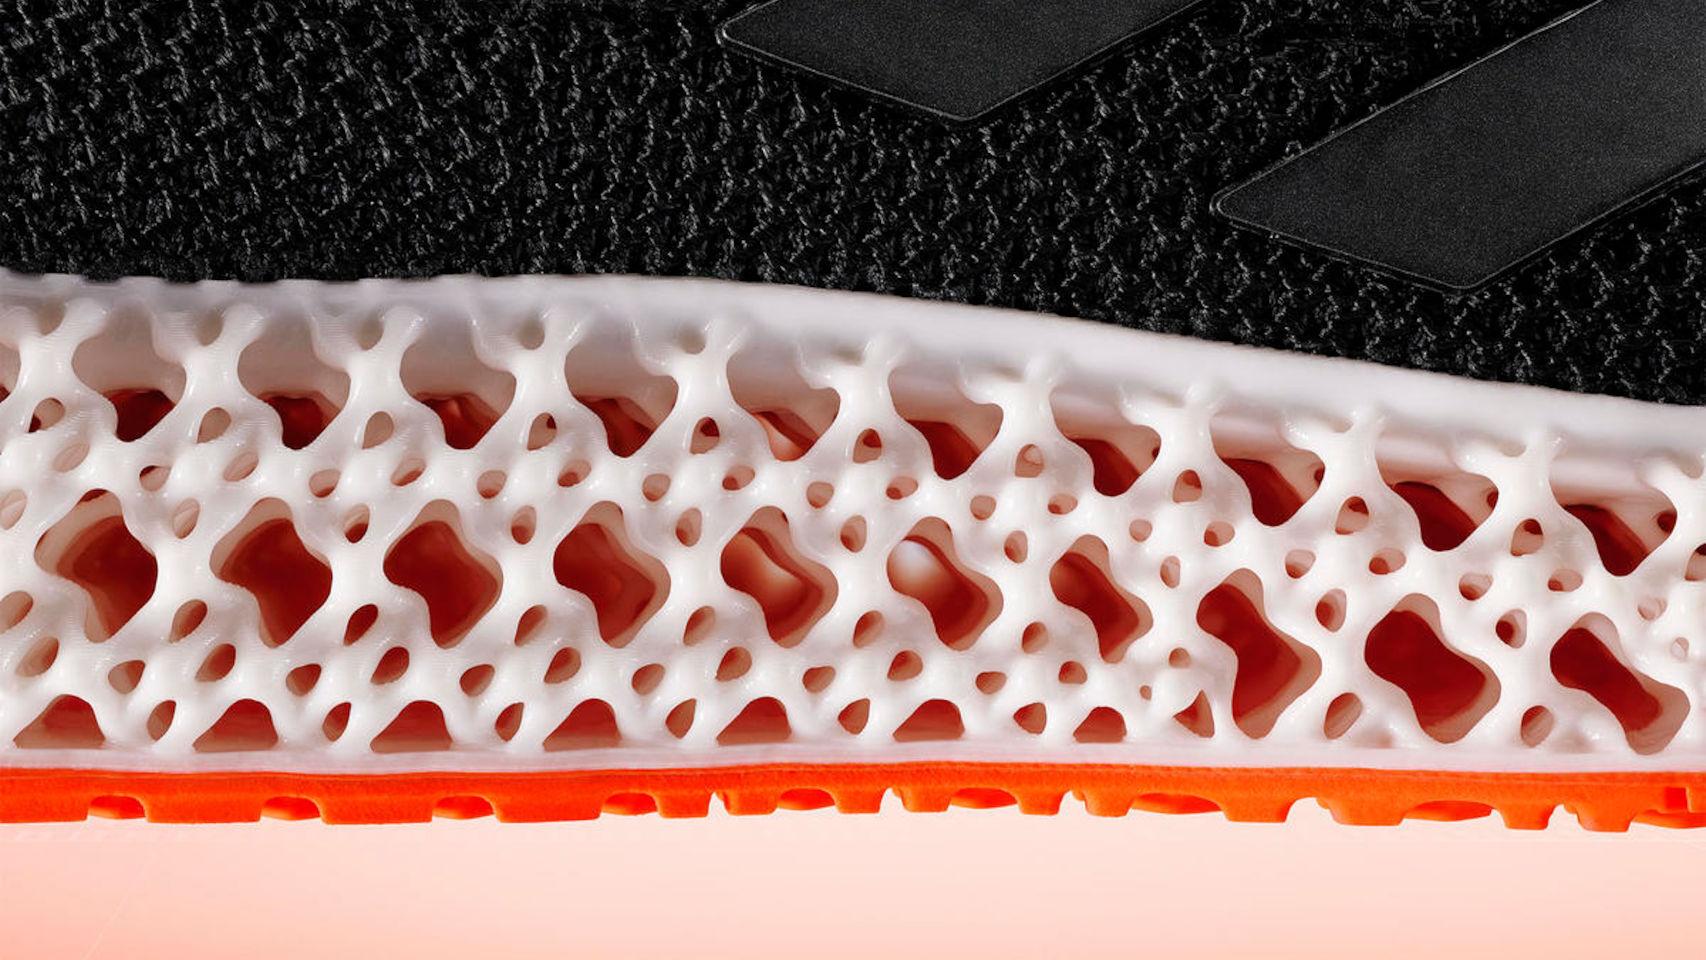 Hecho un desastre Carne de cordero Privilegio Las nuevas Adidas tienen suelas impresas en 3D que mueven el pie